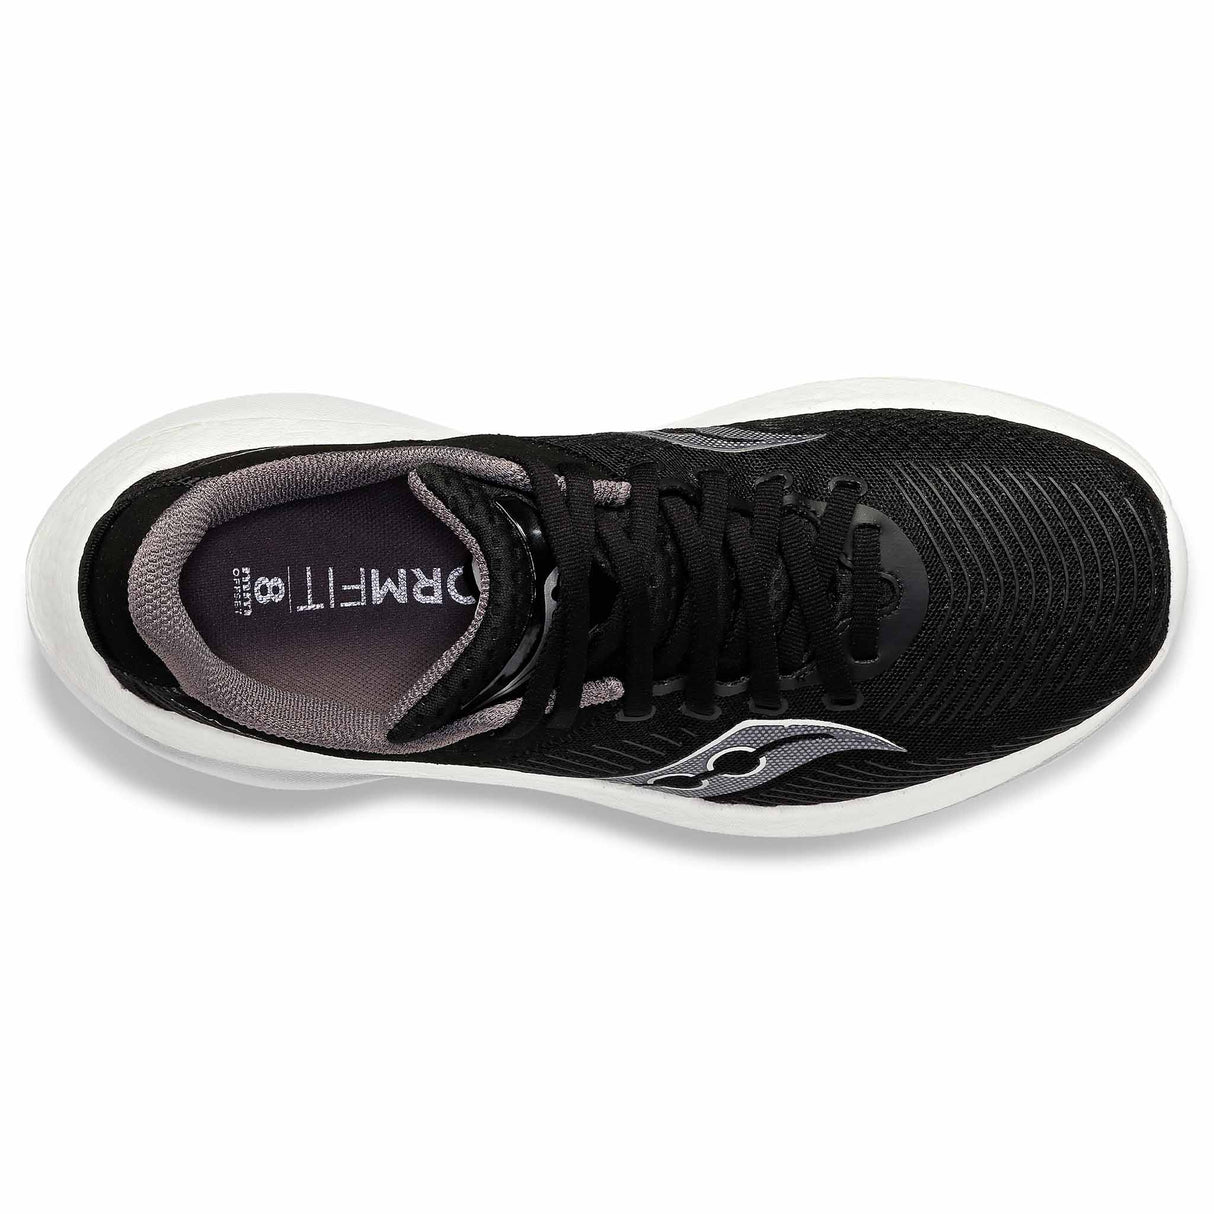 Saucony Kinvara Pro chaussures de course à pied homme - Noir / Blanc